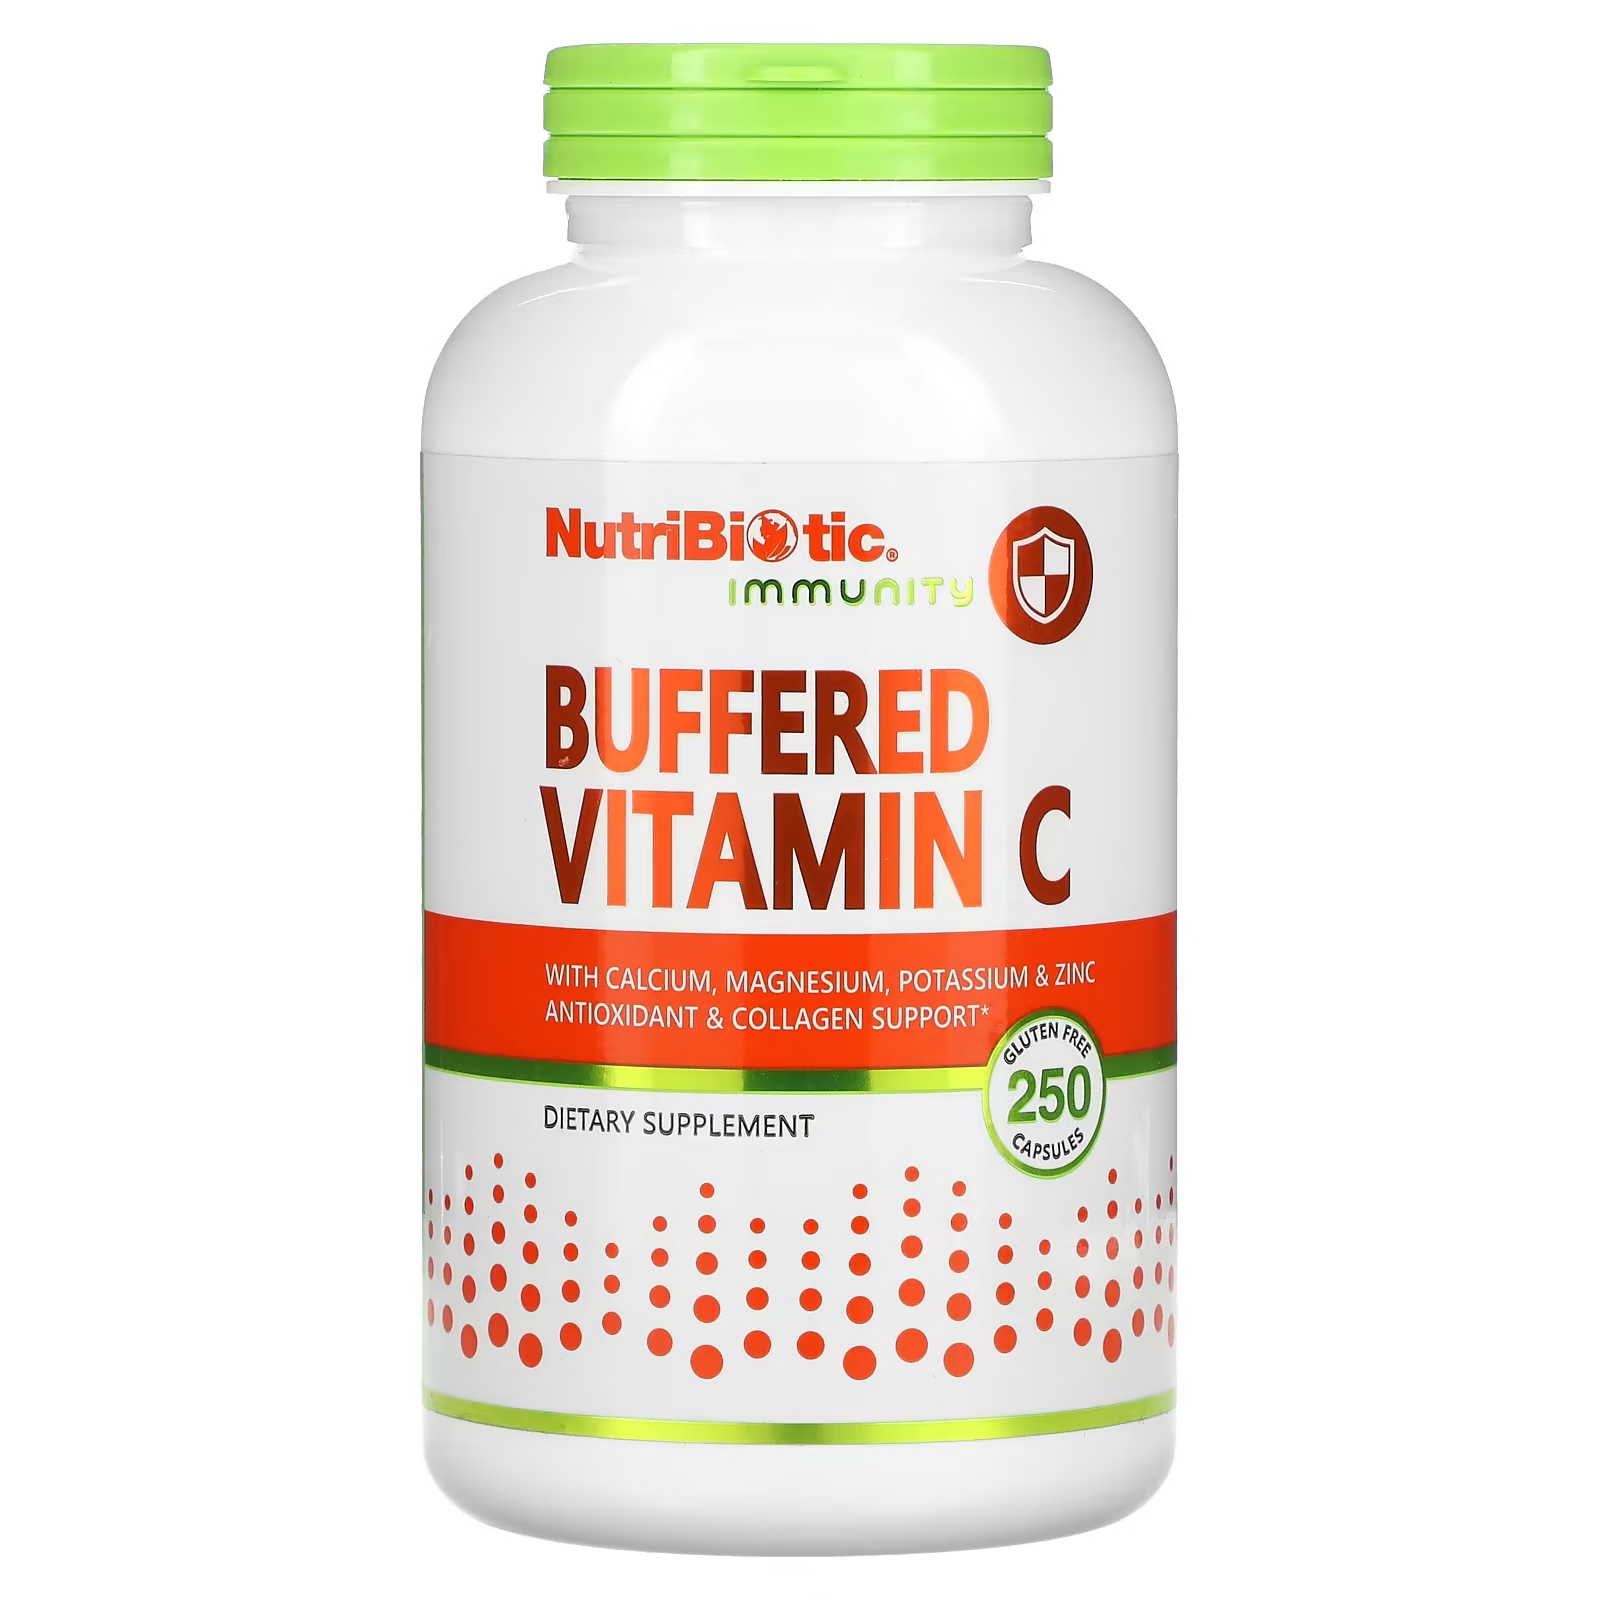 Буферный витамин С NutriBiotic для иммунитета, 250 капсул иммунитет hypo aller c витамин c с кальцием магнием калием и цинком 454 г nutribiotic